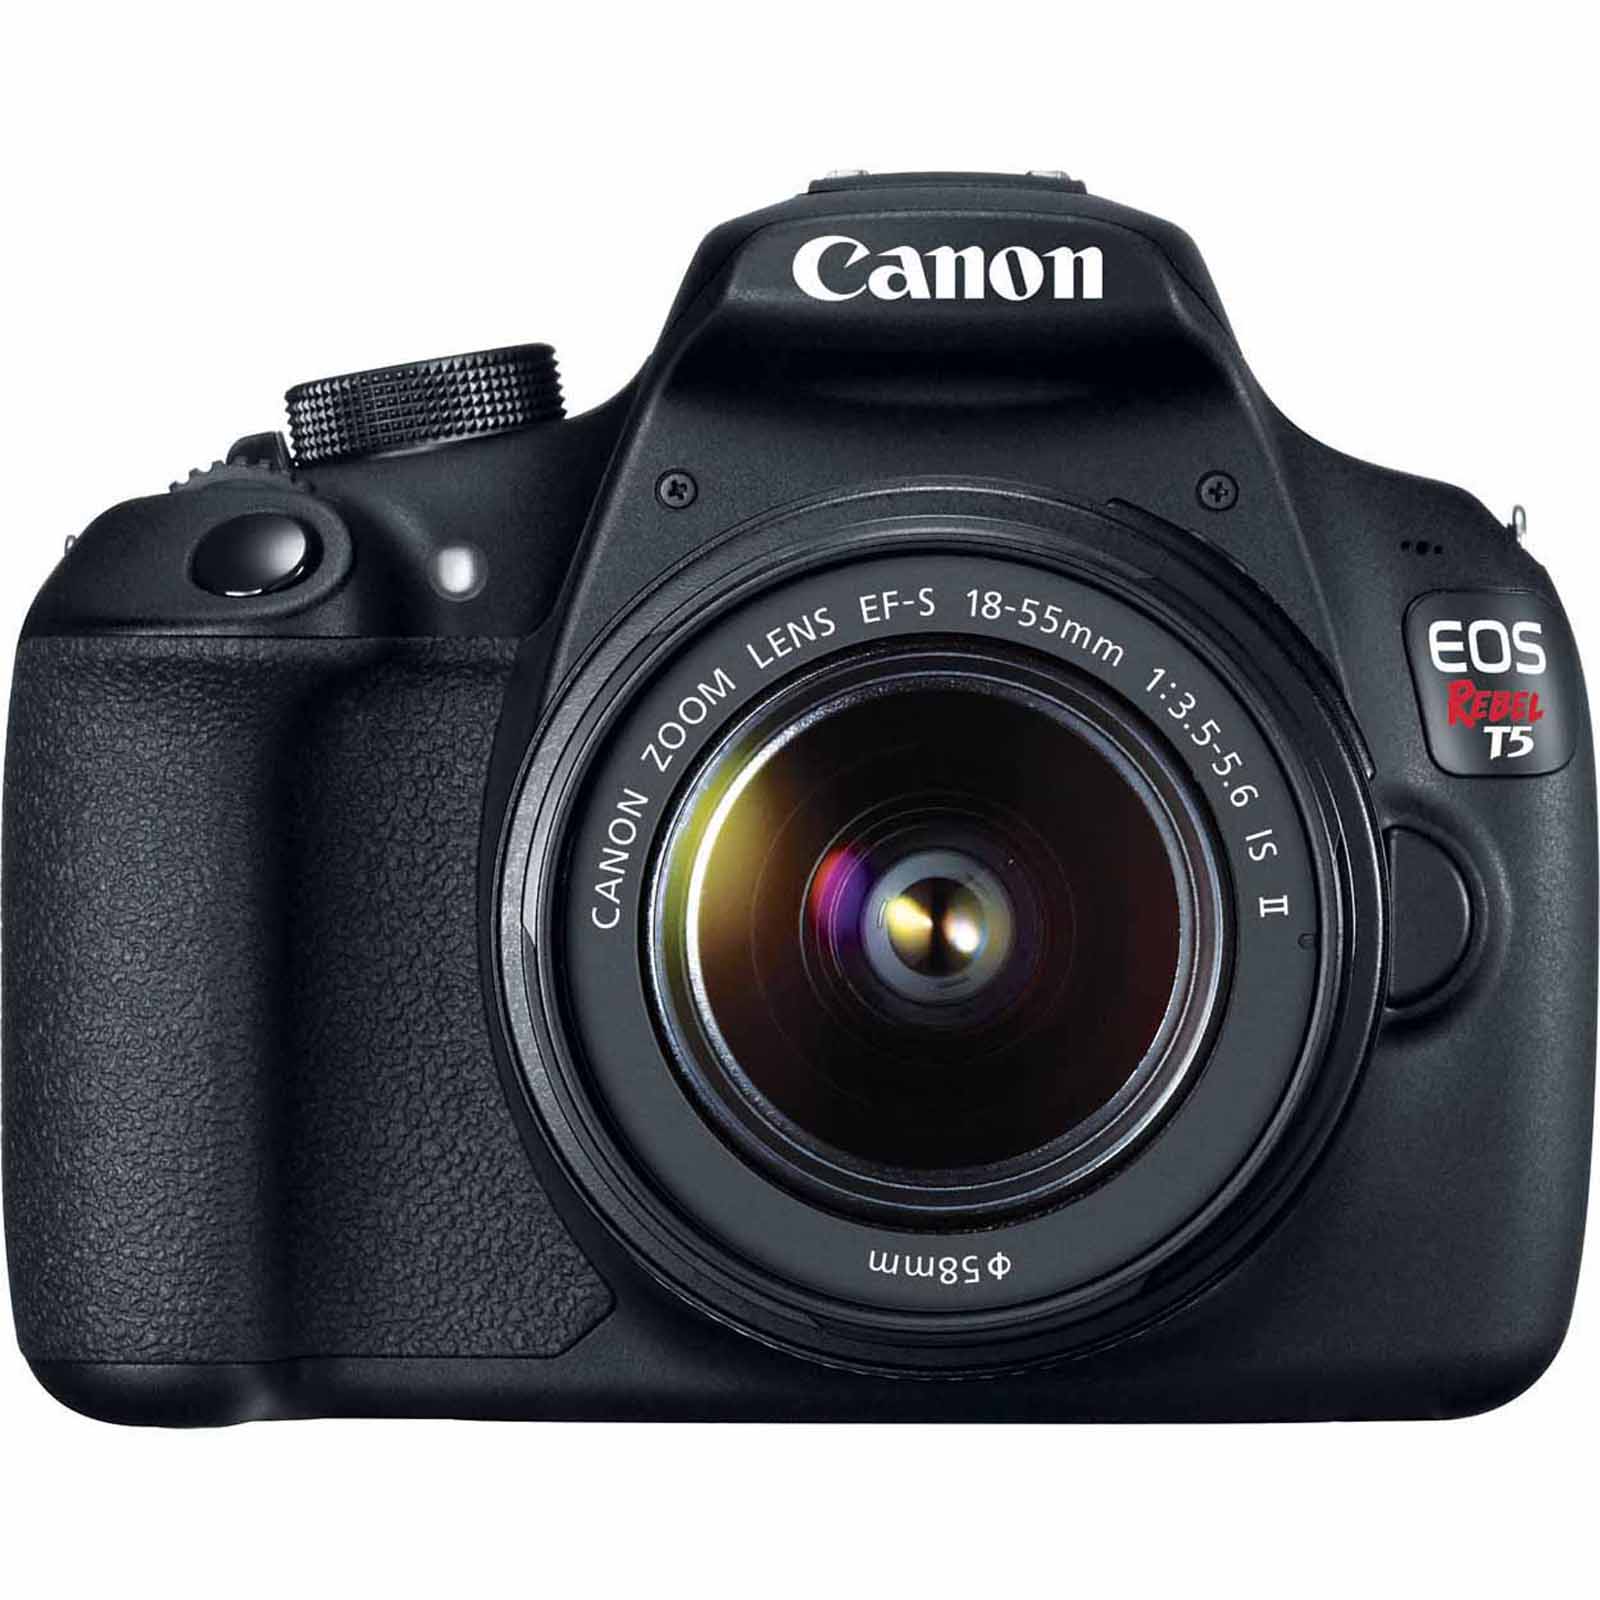 18.0-Megapixel EOS Rebel T5 Digital SLR Camera with 18-55mm Lens - Black